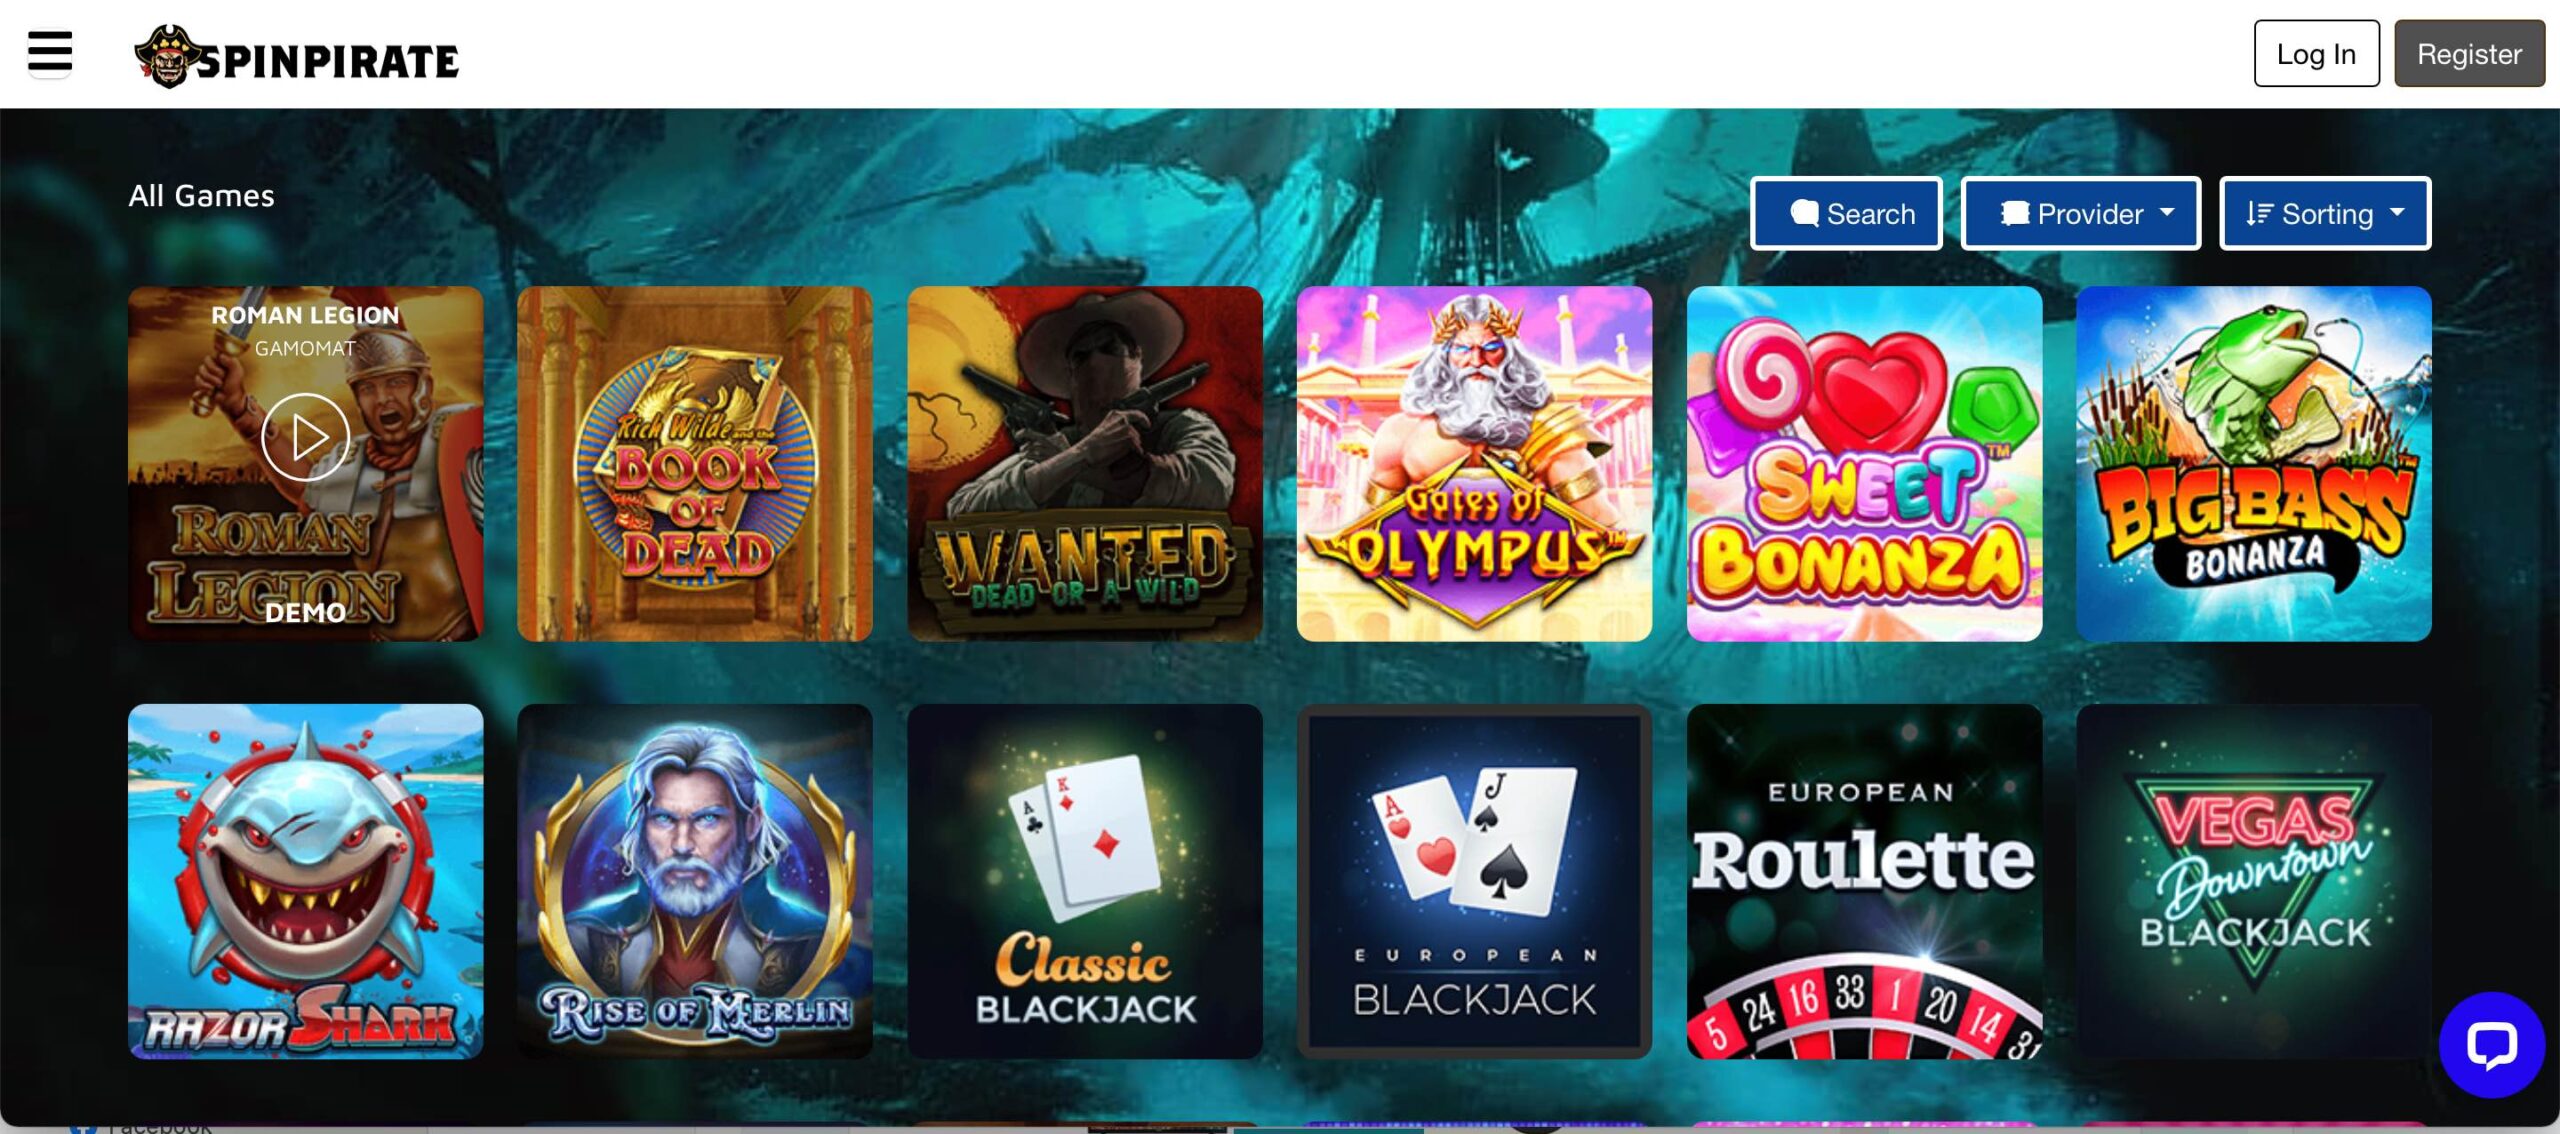 SpinPirate Casino Games